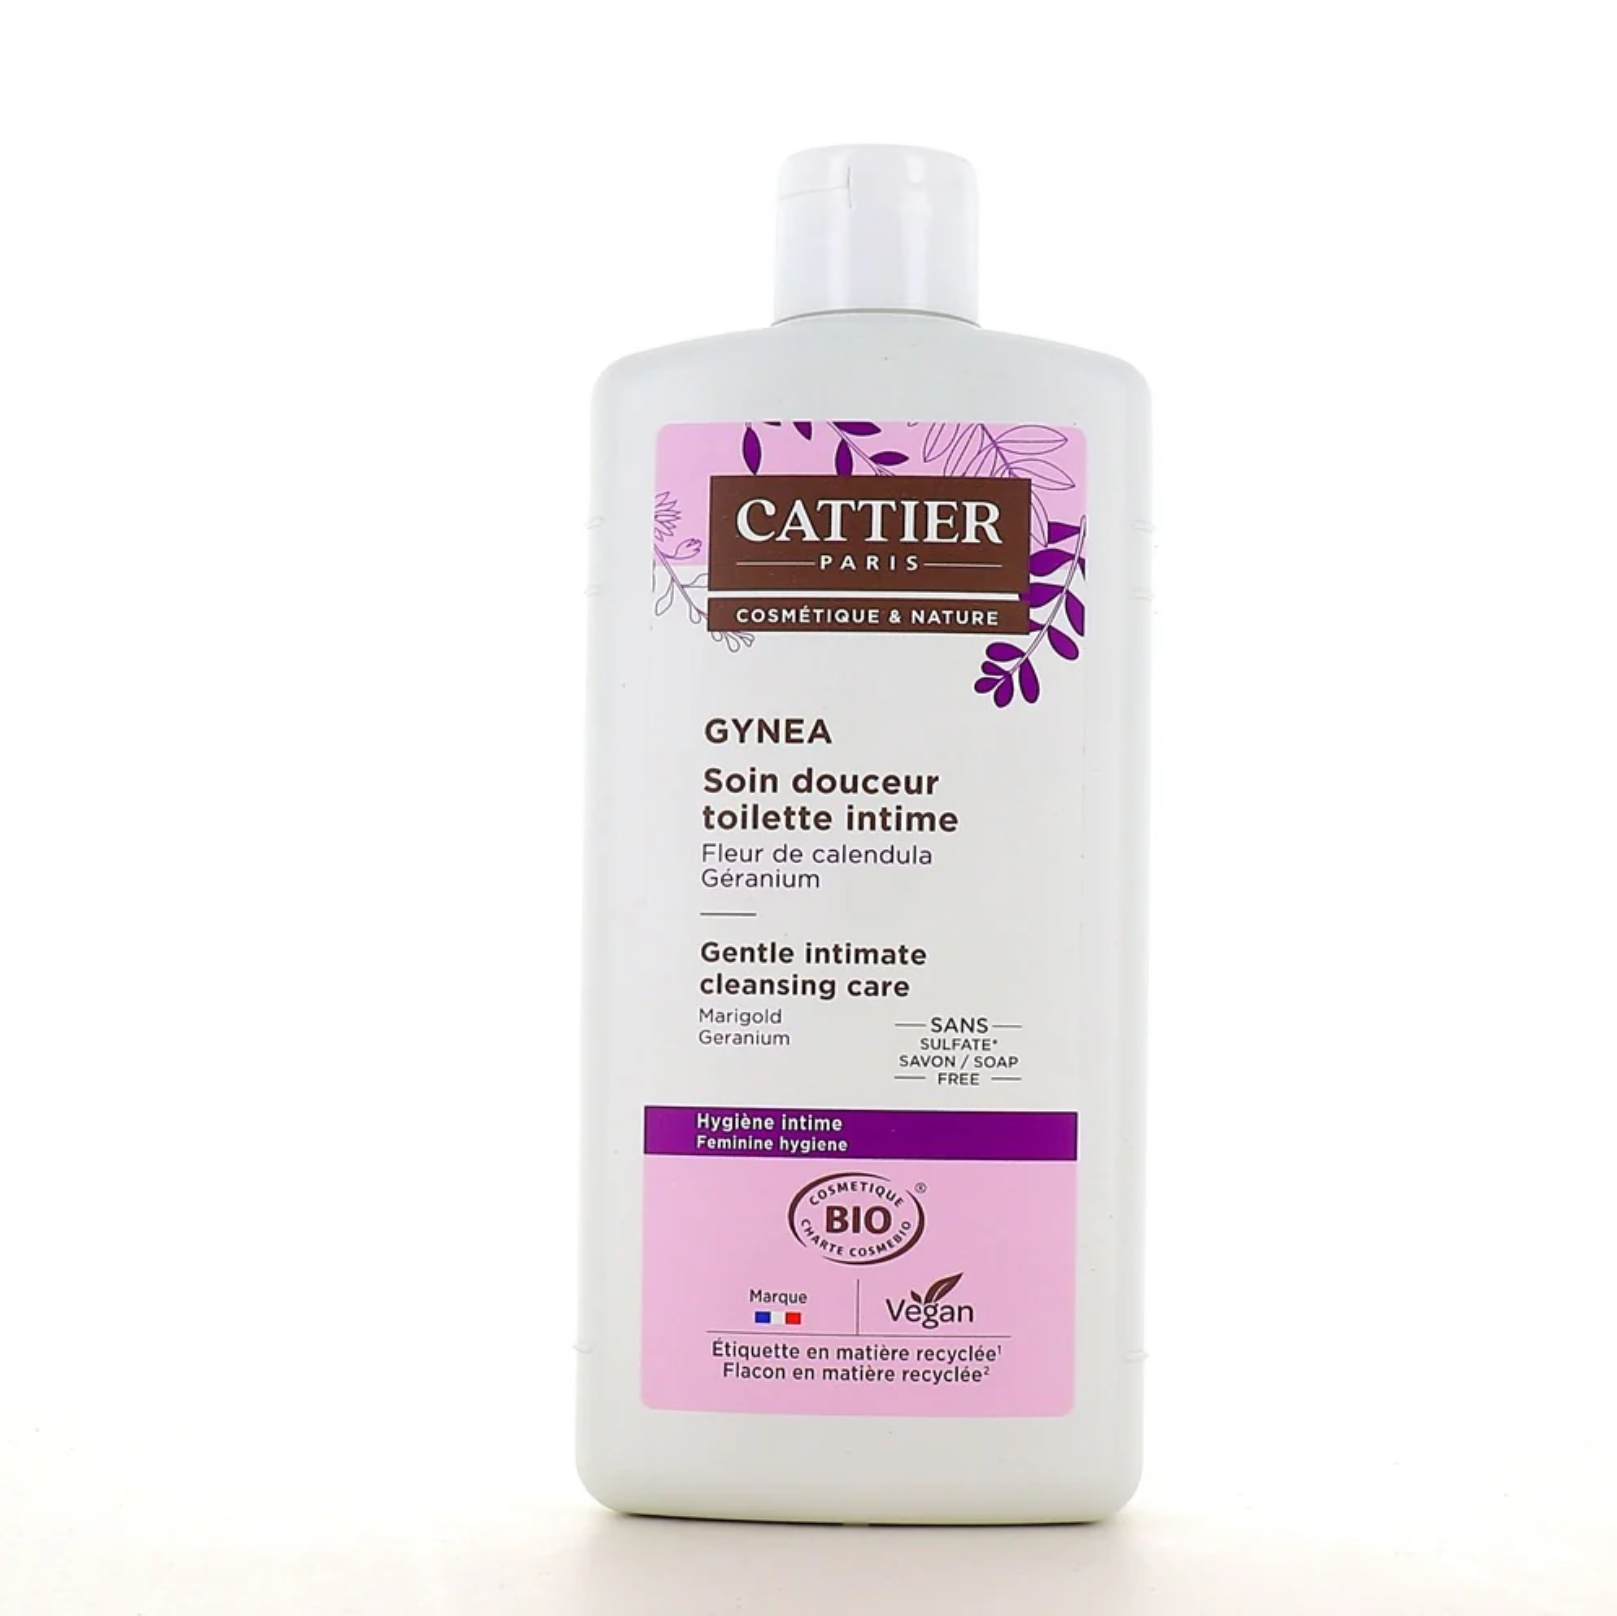 Cattier Gynea Intime Bio 500 ml 有機私密美容溫和護理清潔液